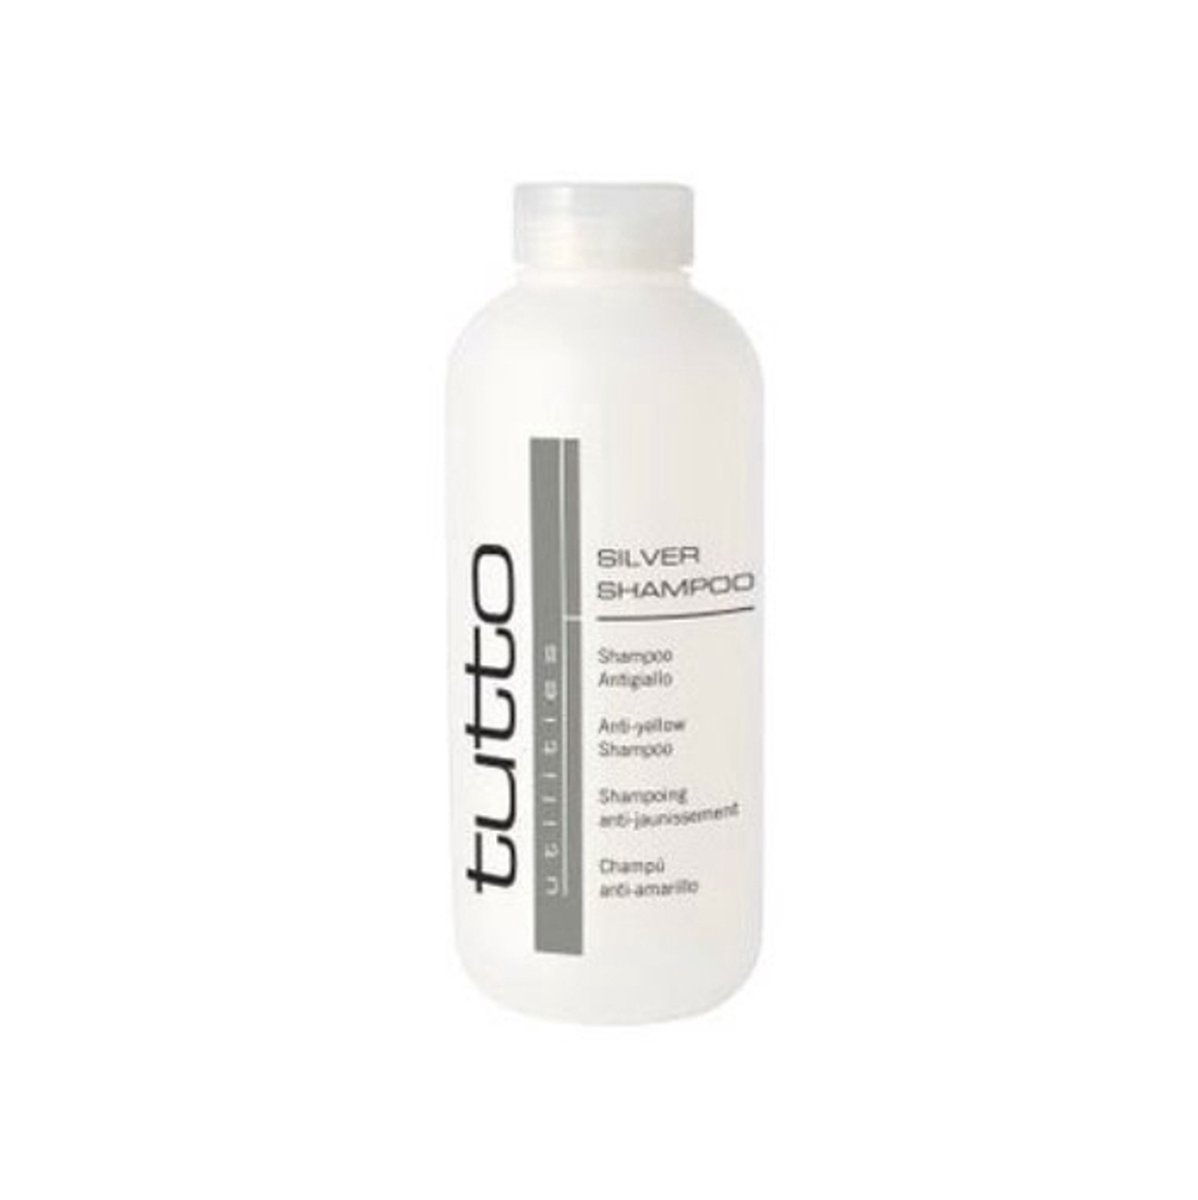 Tutto - silver shampoo -silver - shampoo 350 ml